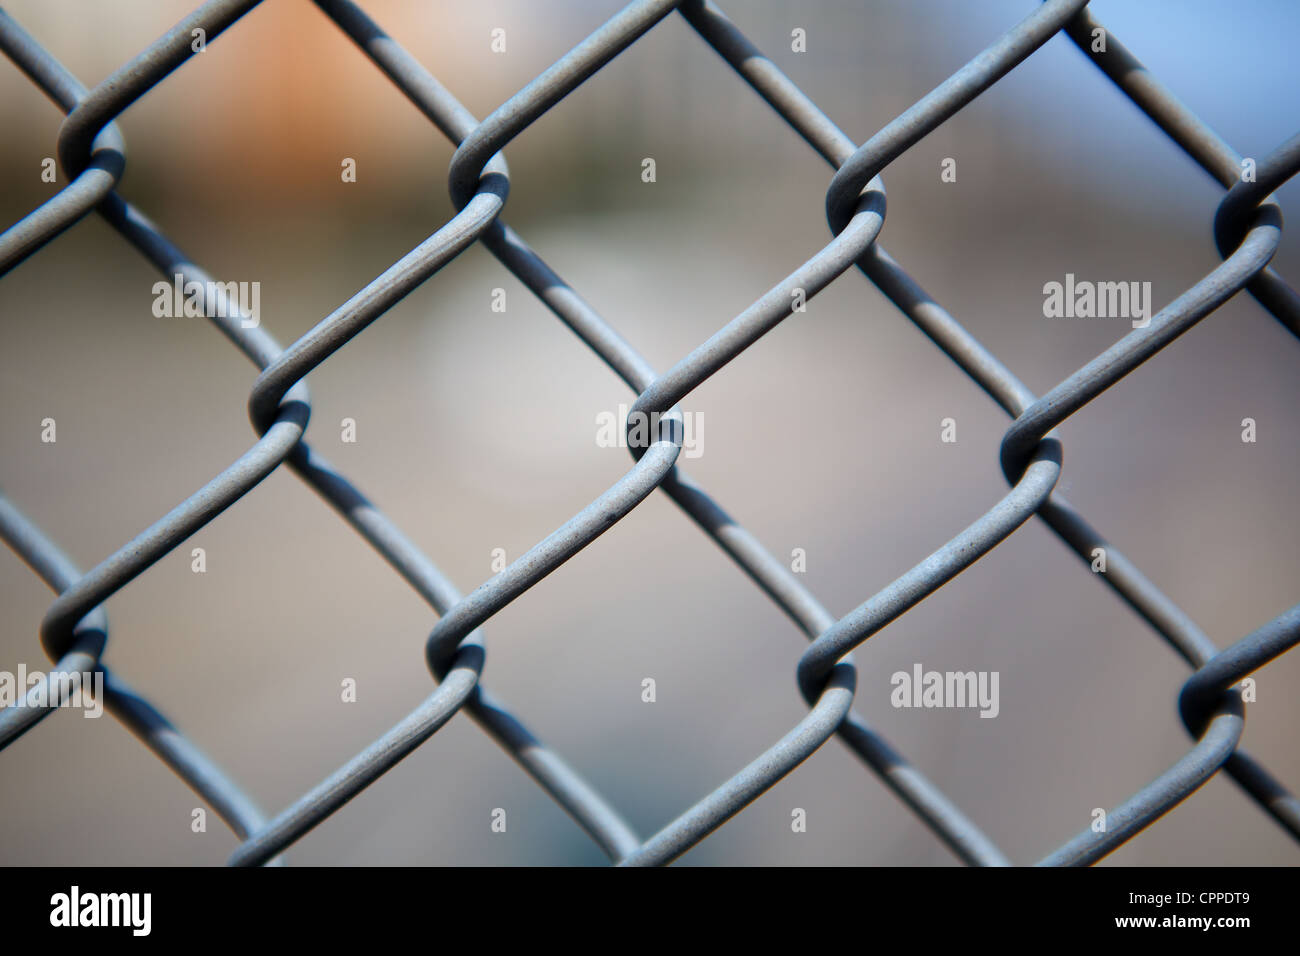 Ministère de l'étroit domaine close up image of chain link fence Banque D'Images